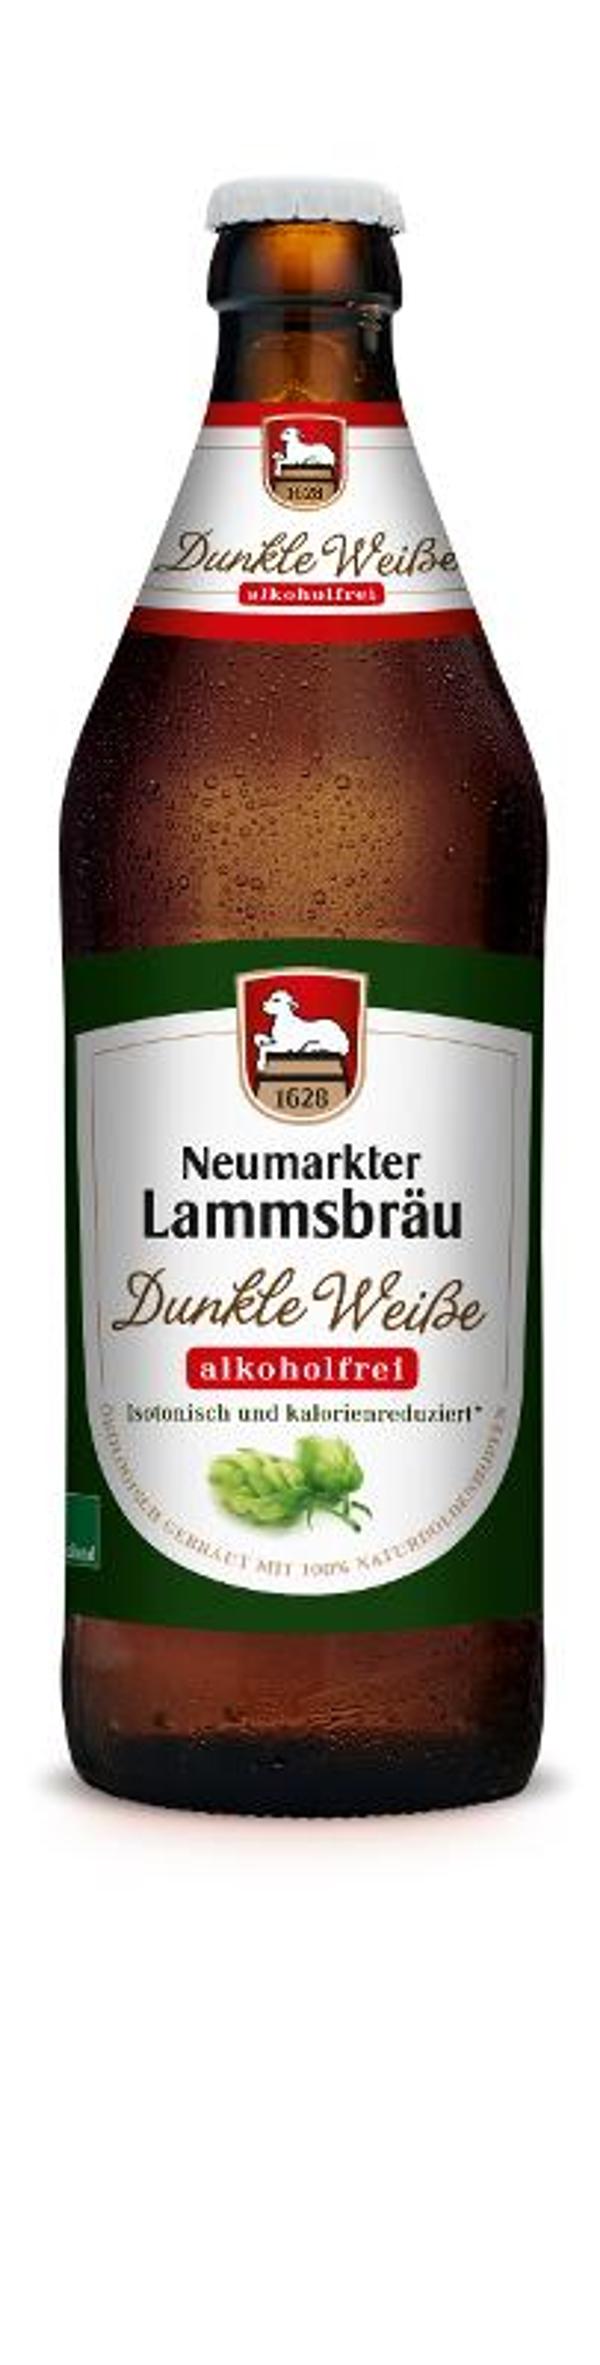 Produktfoto zu Lammsbräu Dunkle Weisse alkfre